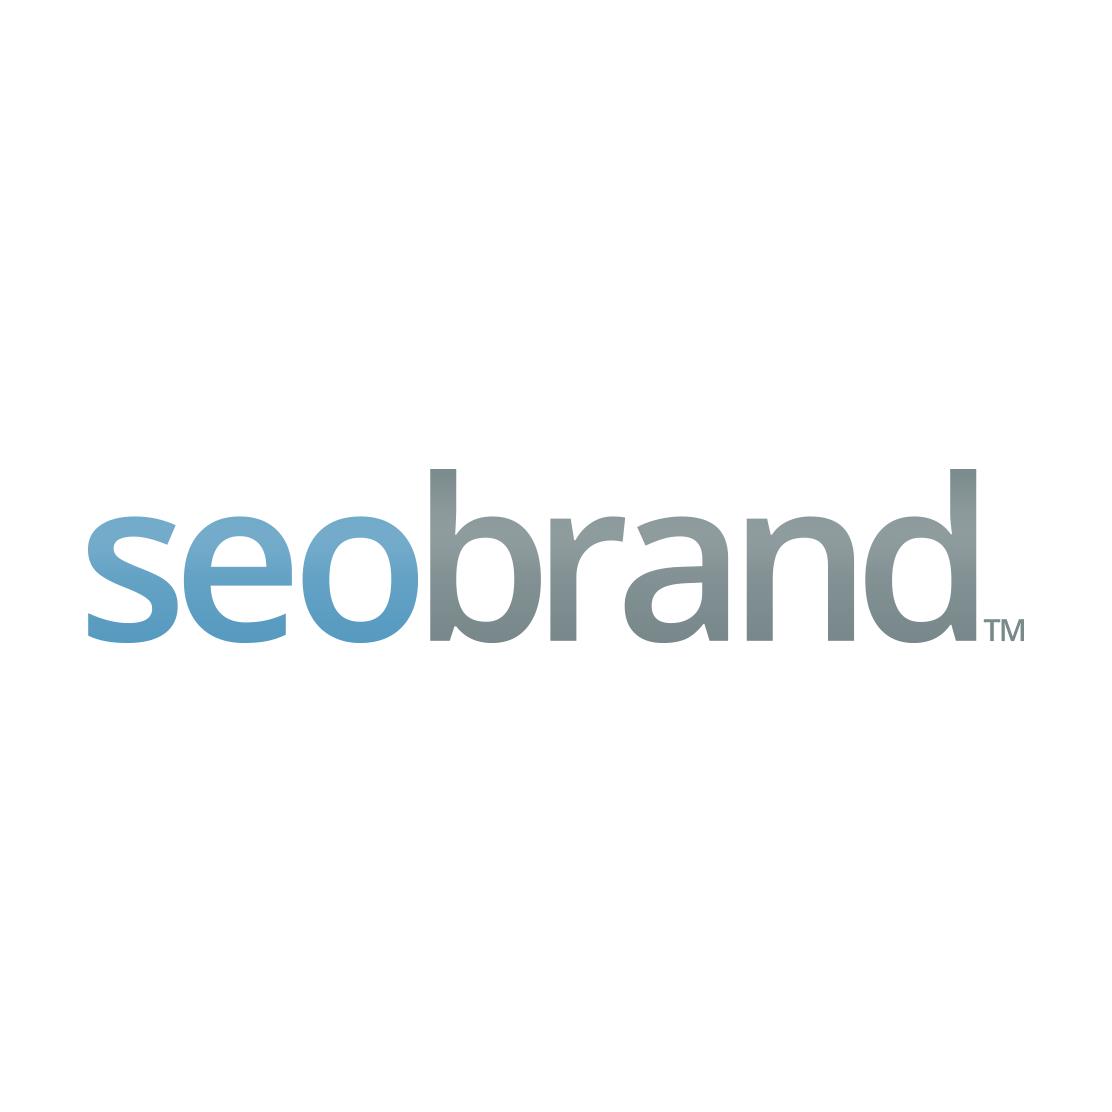 Best Philadelphia SEO Business Logo: SEO Brand